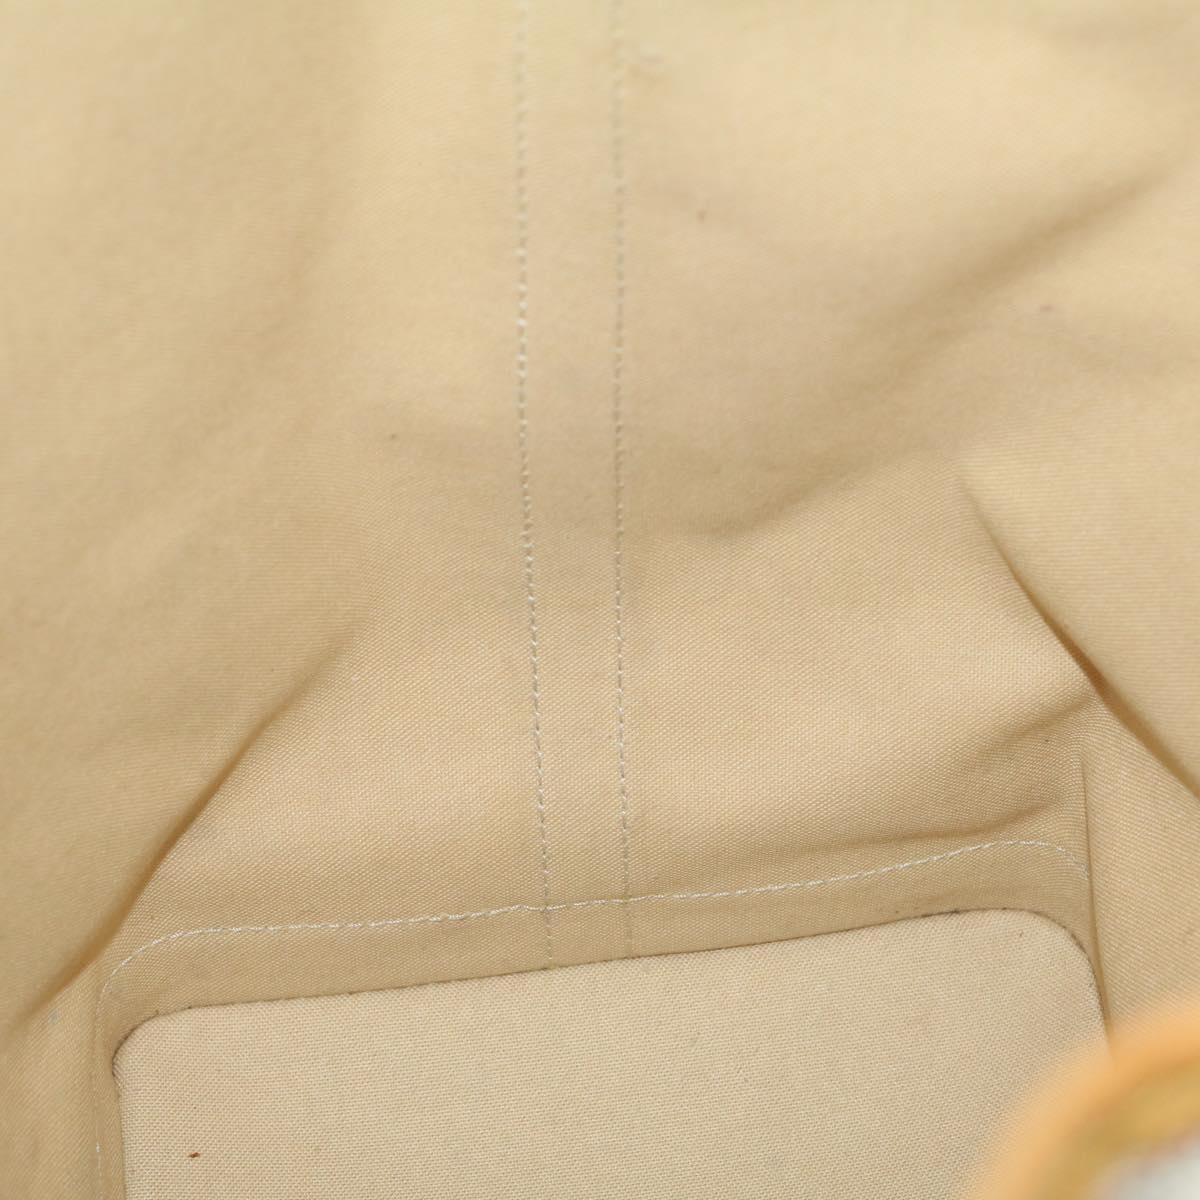 LOUIS VUITTON Damier Azur Noe Shoulder Bag N42222 LV Auth 30215A